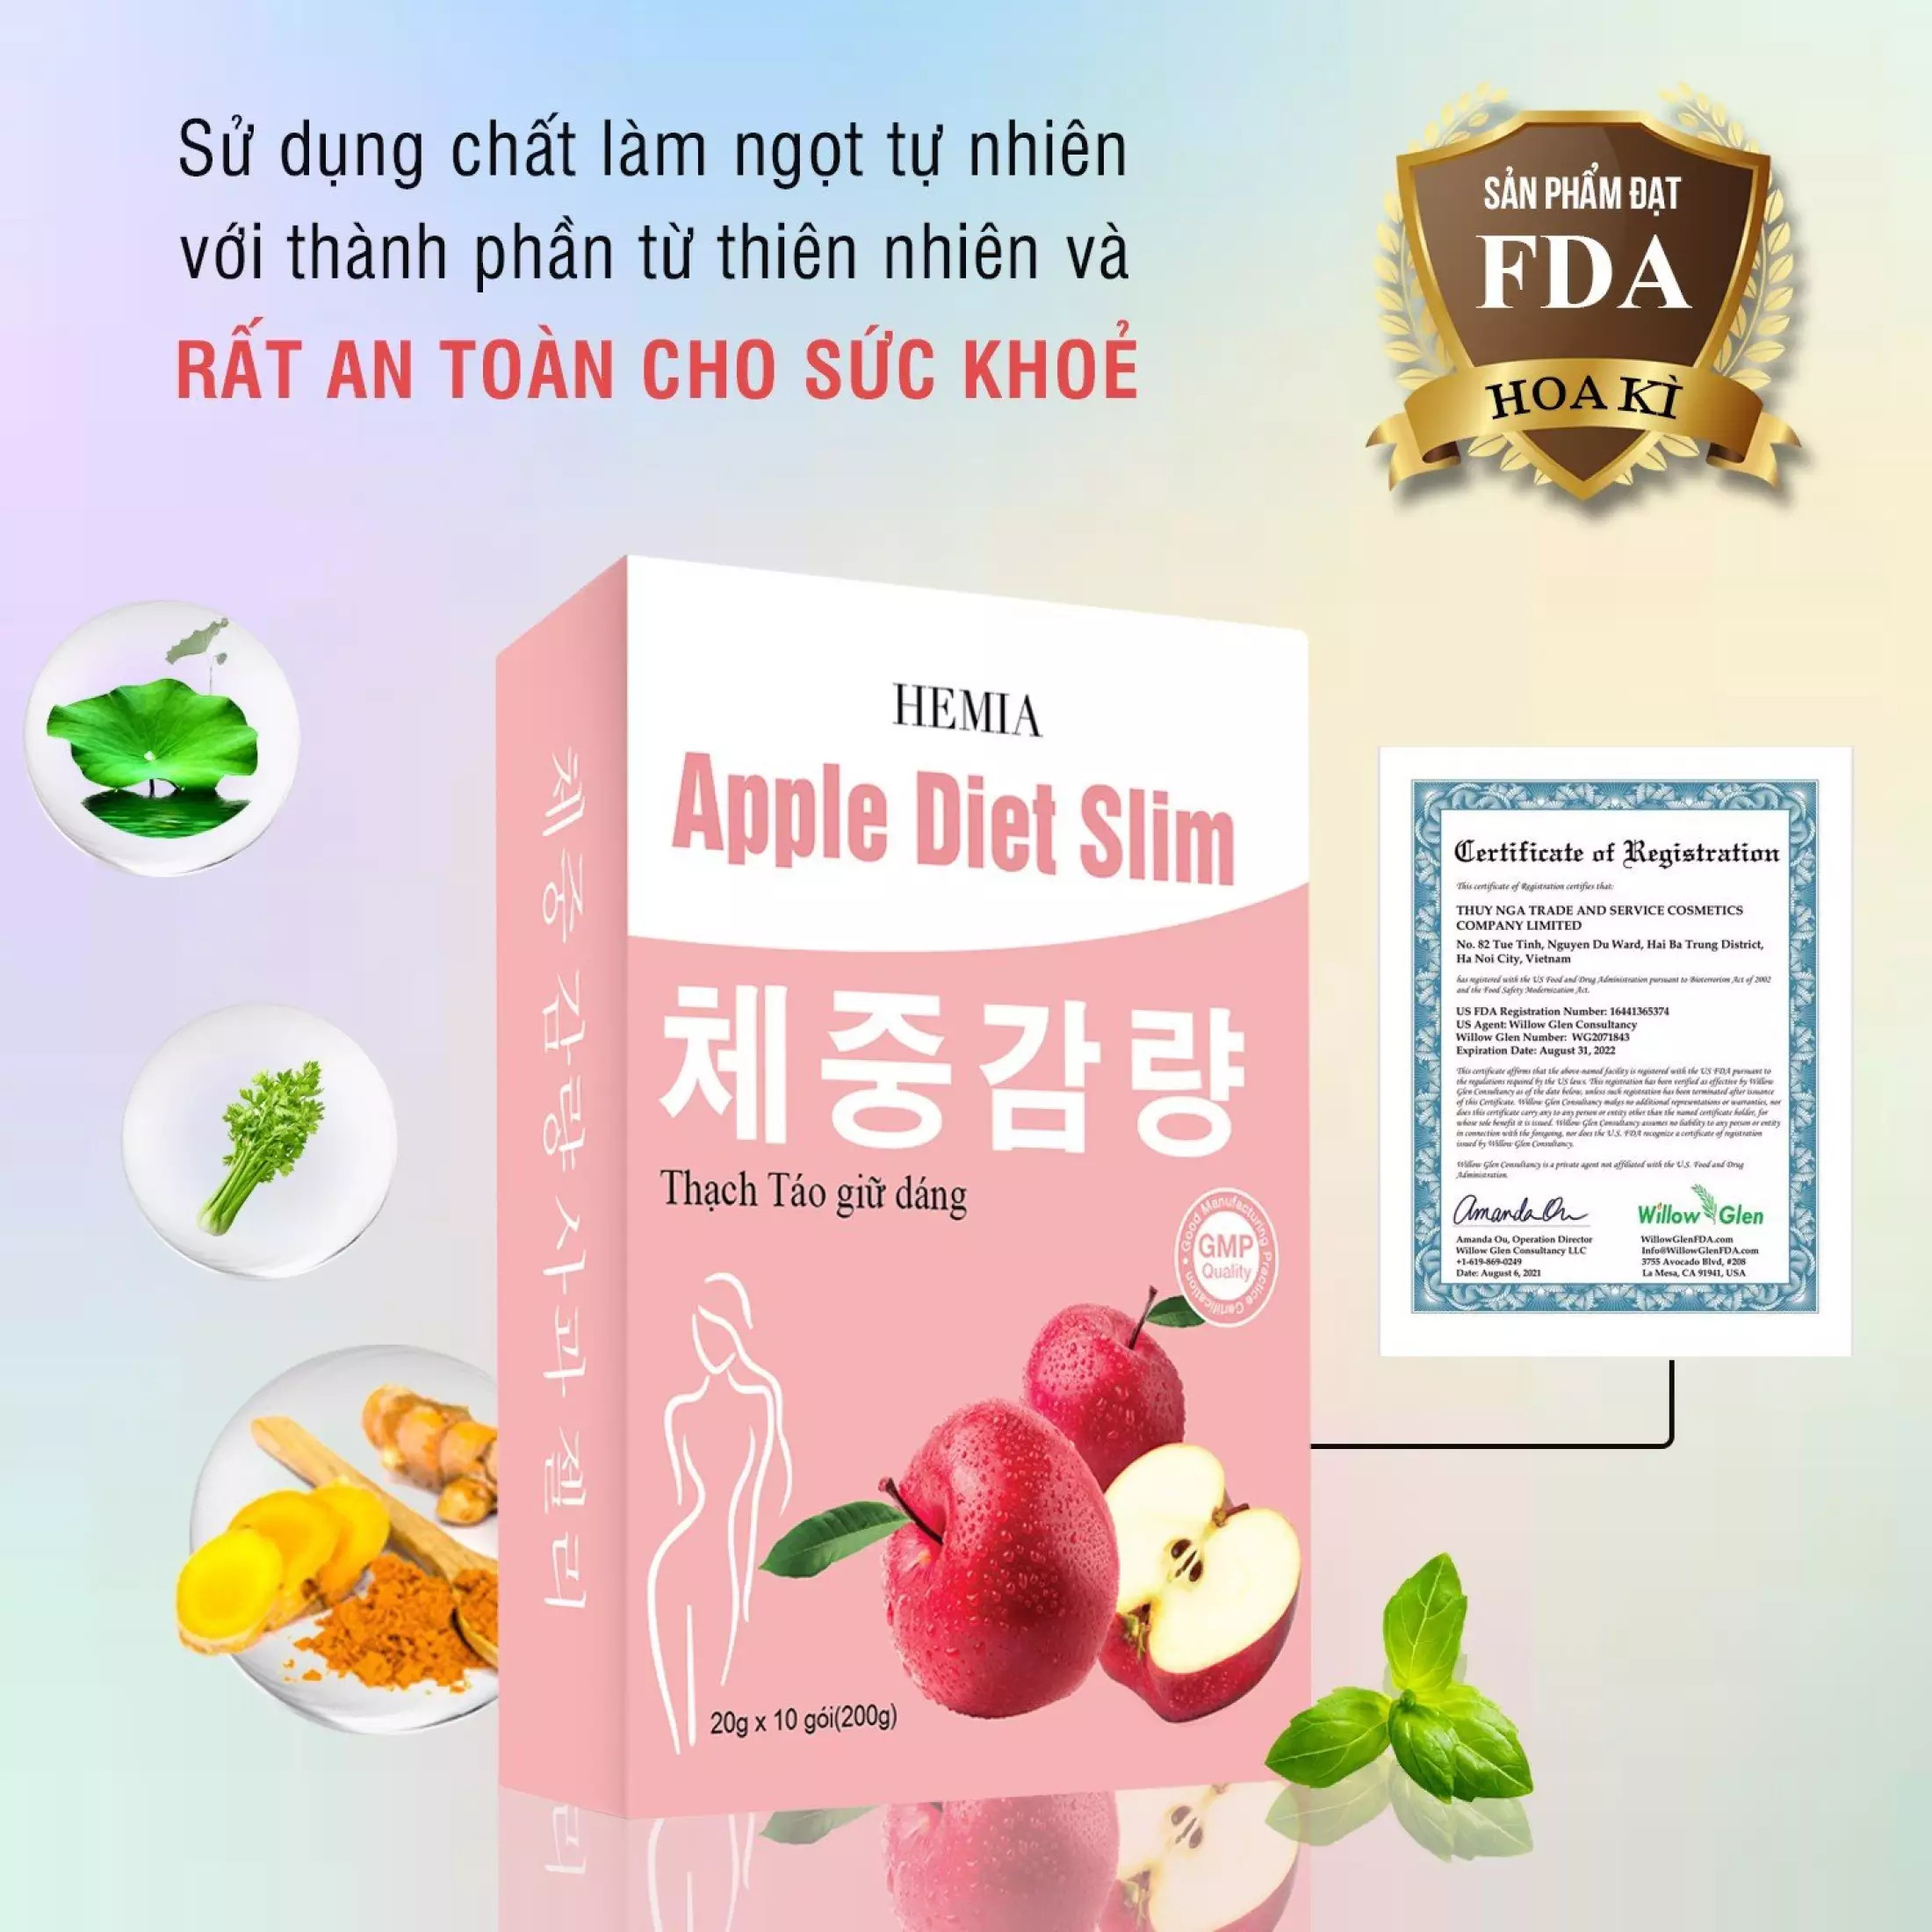 Thạch táo giảm cân Hemia 1 hộp 10 gói thạch- giảm cân an toàn theo công nghệ Hàn Quốc- Hàng chính hãng thumbnail